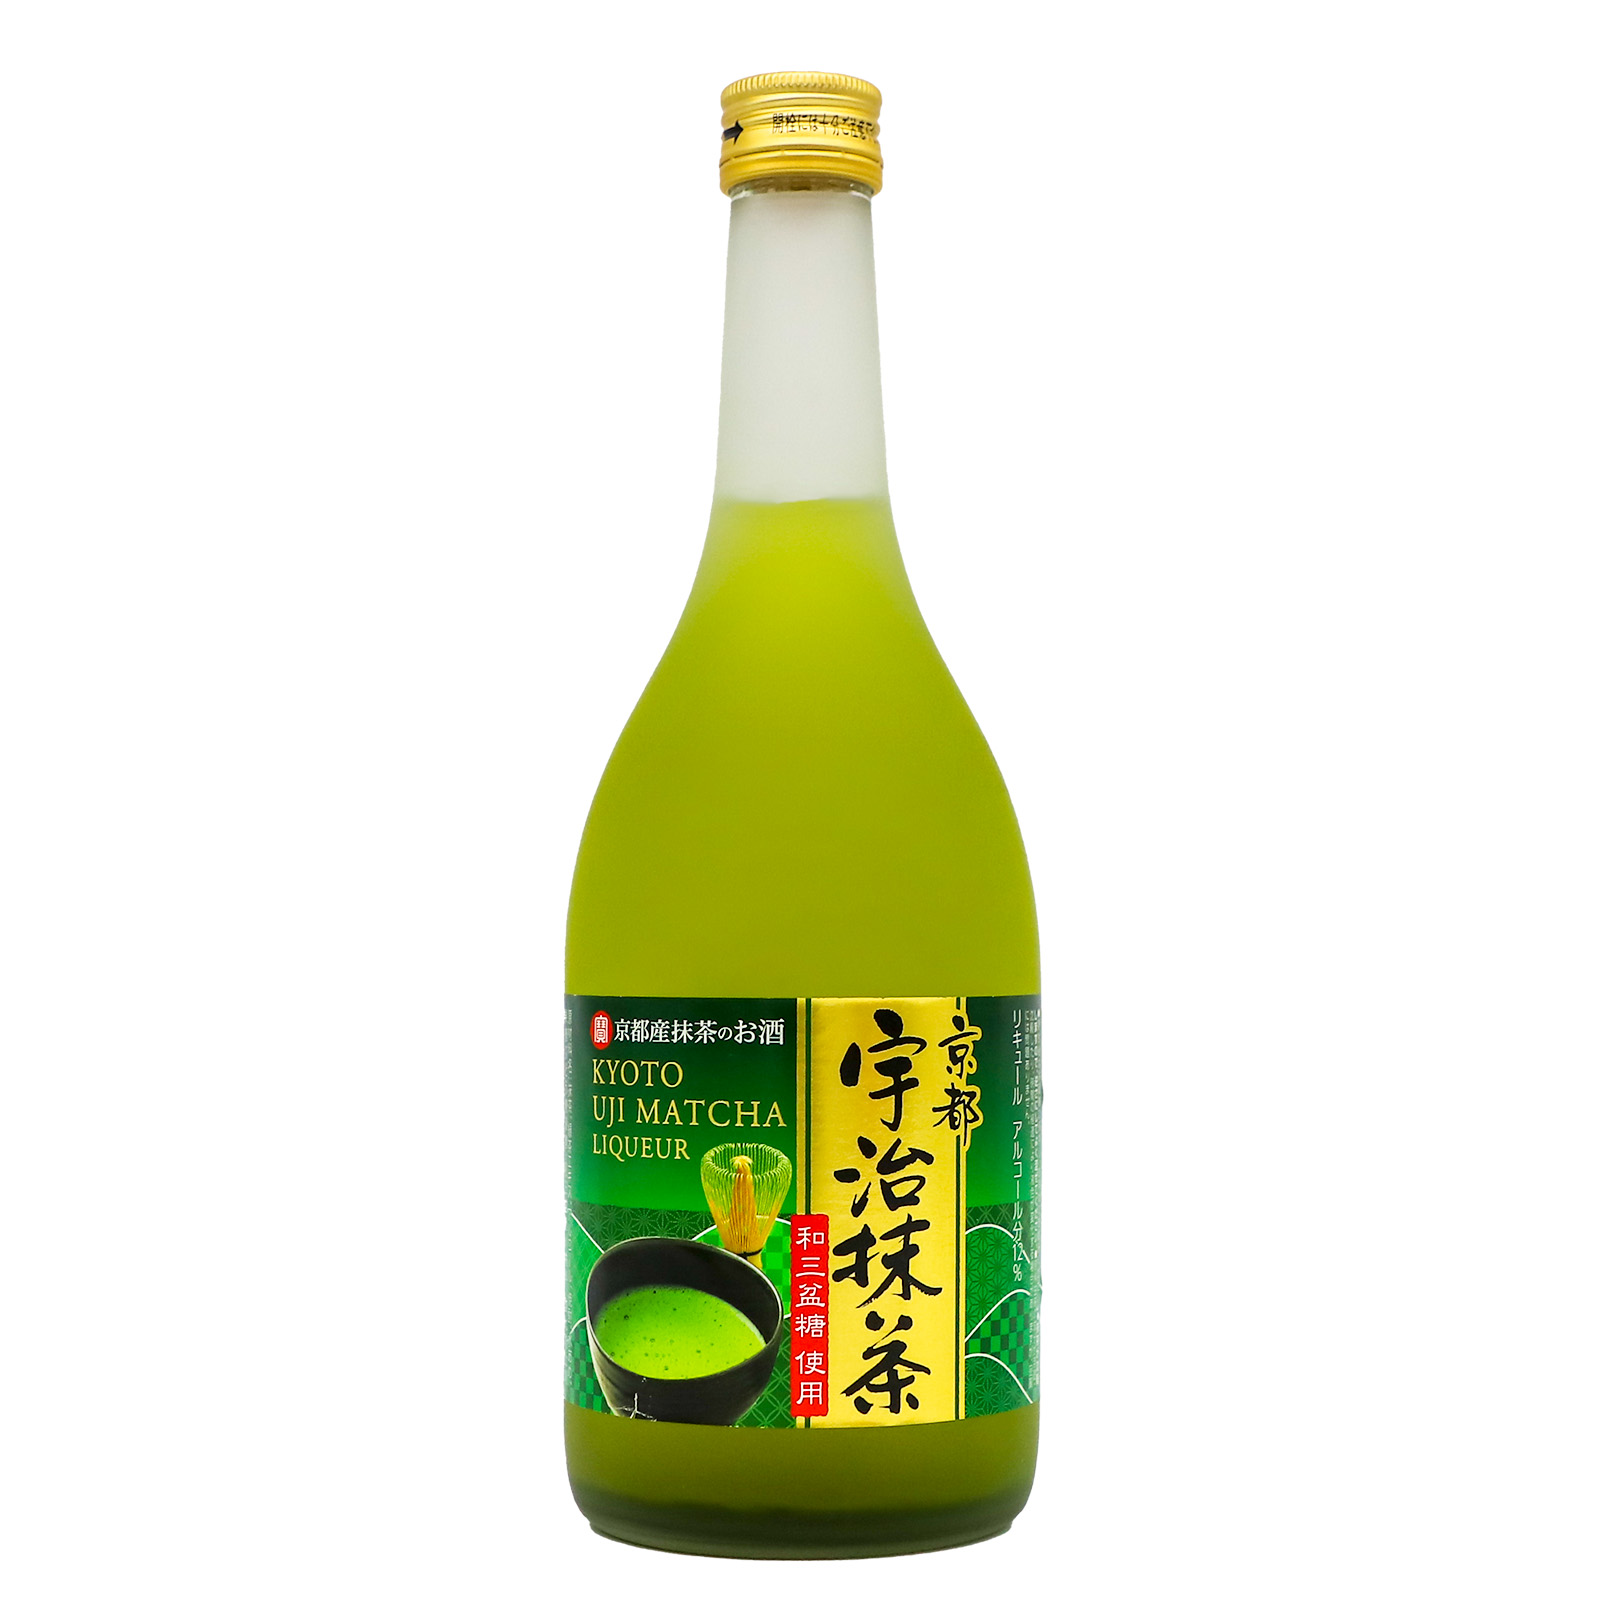 Takara ShuzoKyoto Uji Matcha Liqueur